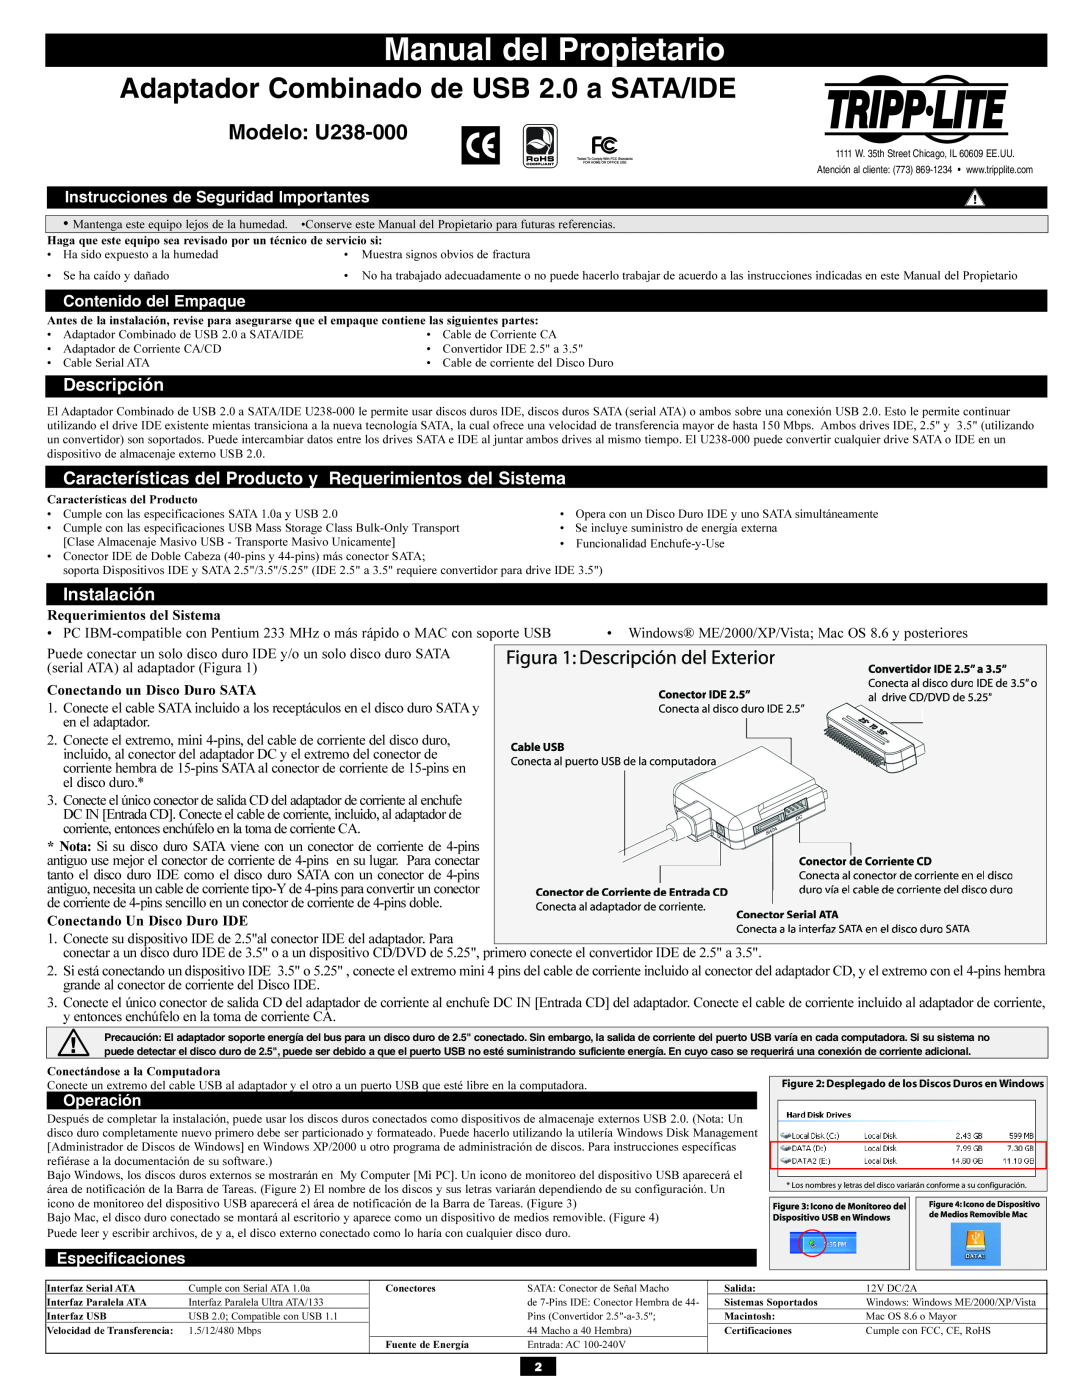 Tripp Lite Manual del Propietario, Modelo U238-000, Descripción, Instalación, Instrucciones de Seguridad Importantes 